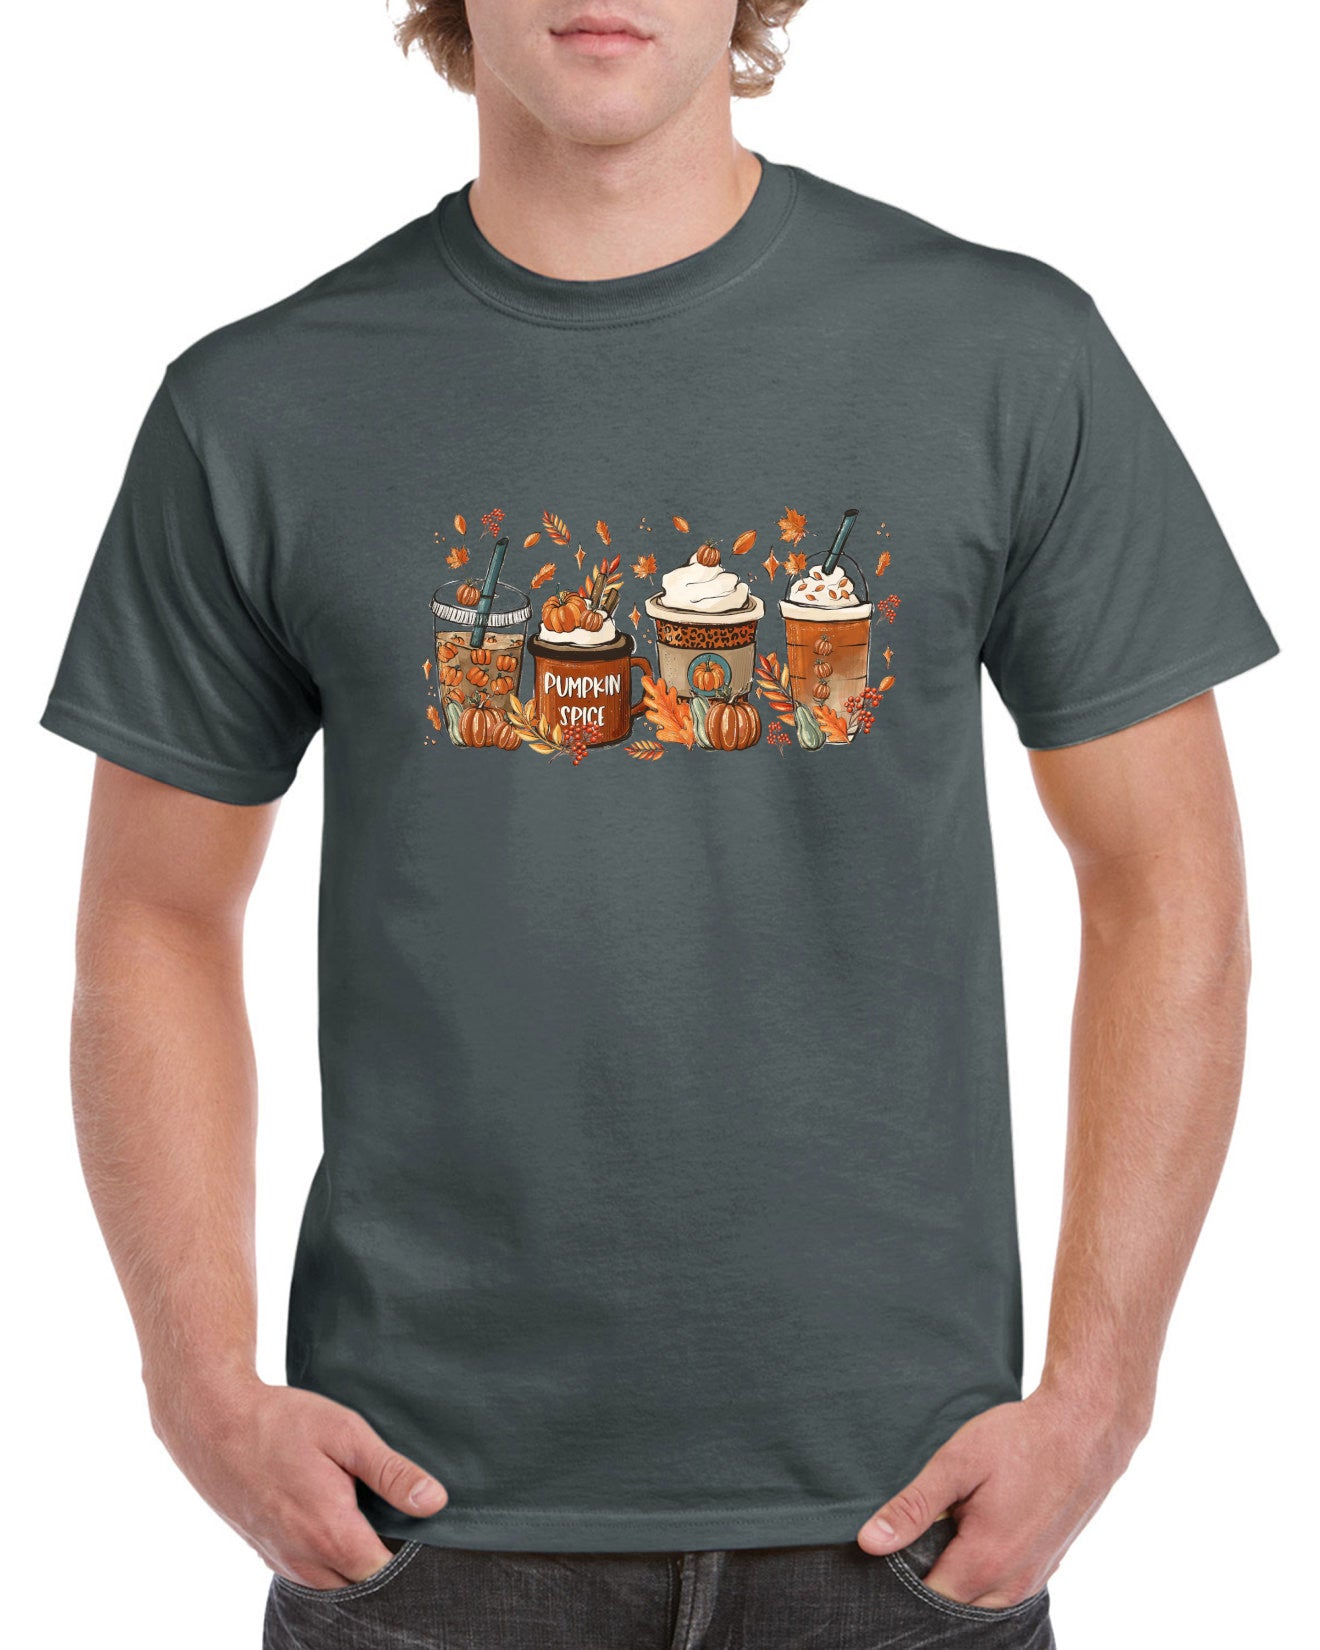 T-Shirt Herbst Autumn Kaffee Coffee Geschenk Kleidung